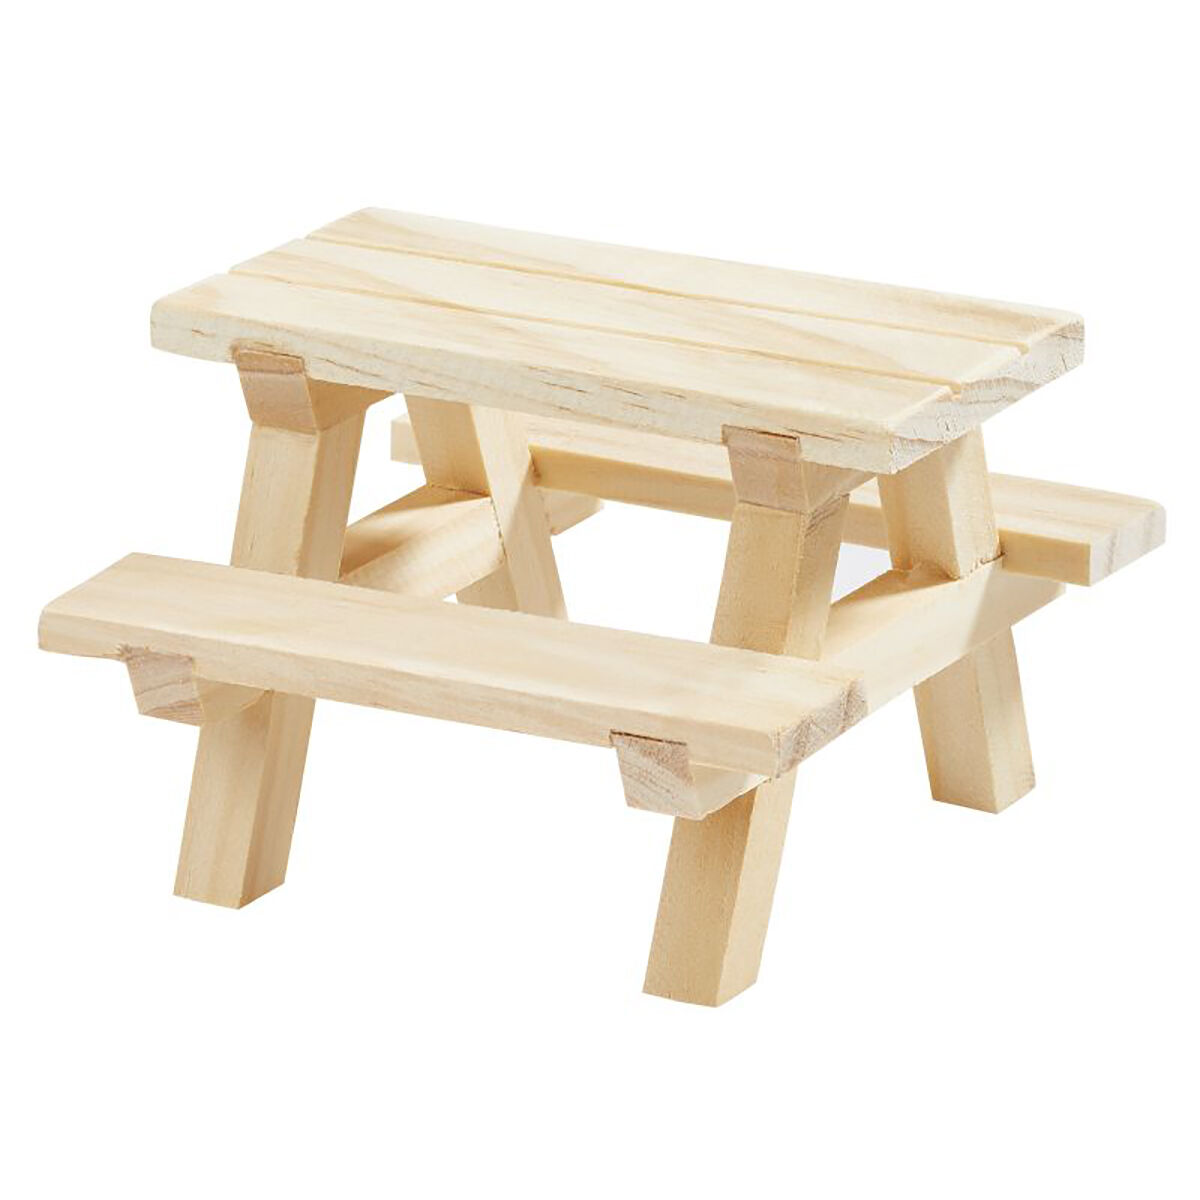 NEU Miniatur-Picknick-Tisch mit Bnken, Gre 8 x 8 x 5,5 cm